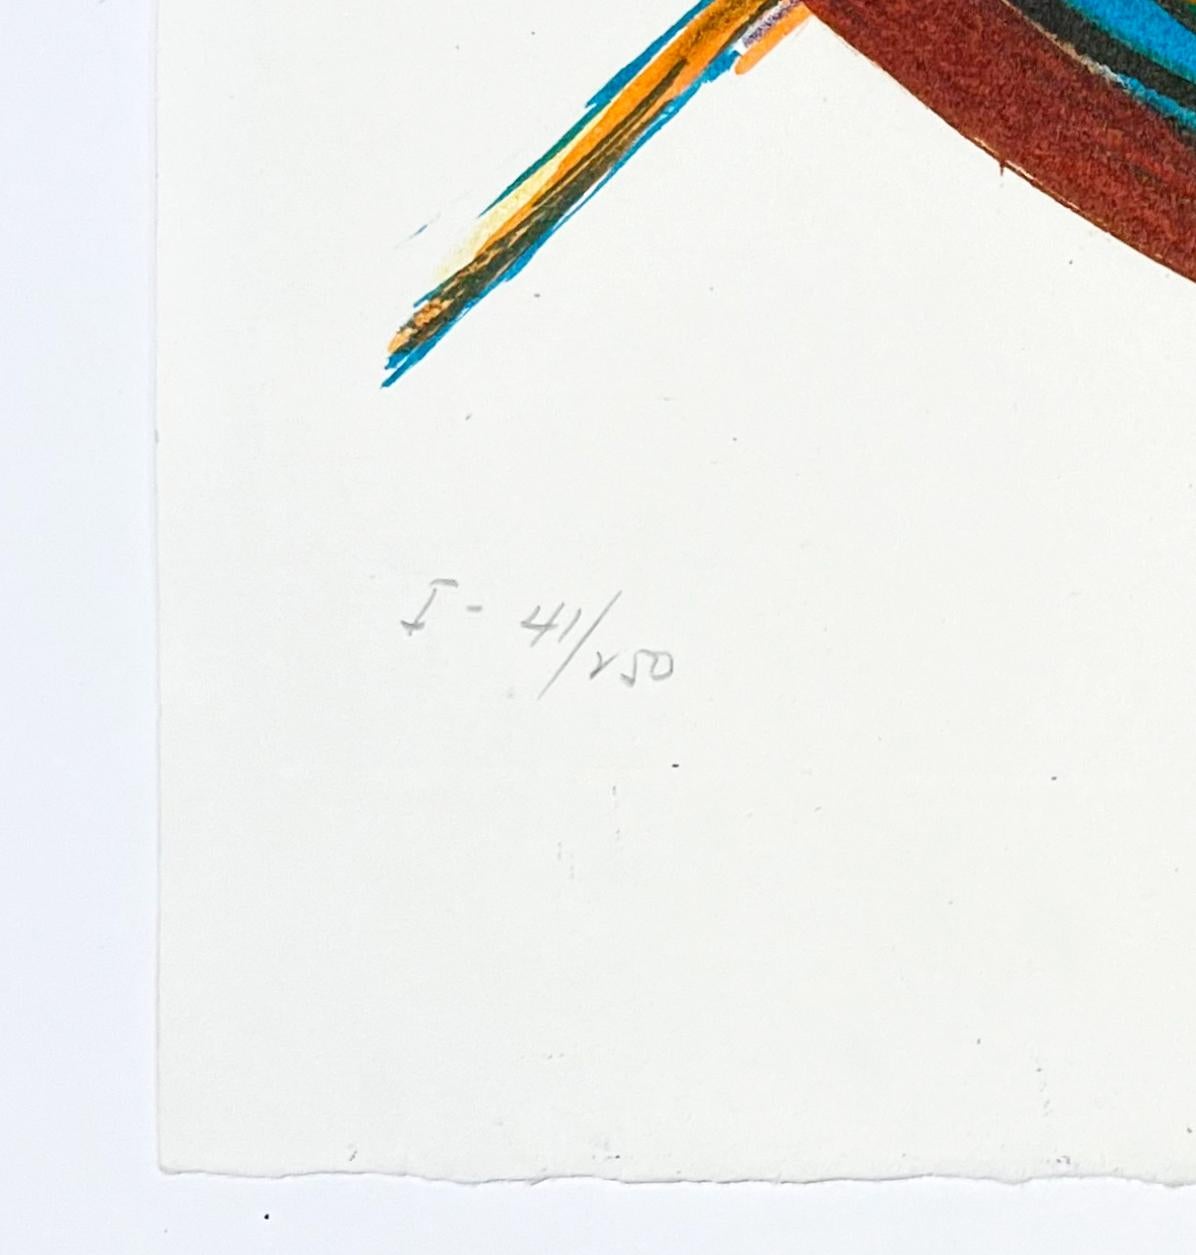 Artistics : Salvador Dali
Titre : Up&Up
Portfolio : Imaginations et objets du futur
Moyen d'expression : Lithographie avec collage
Année : 1975
Edition : I-41/250
Taille de la feuille : 30 1/4